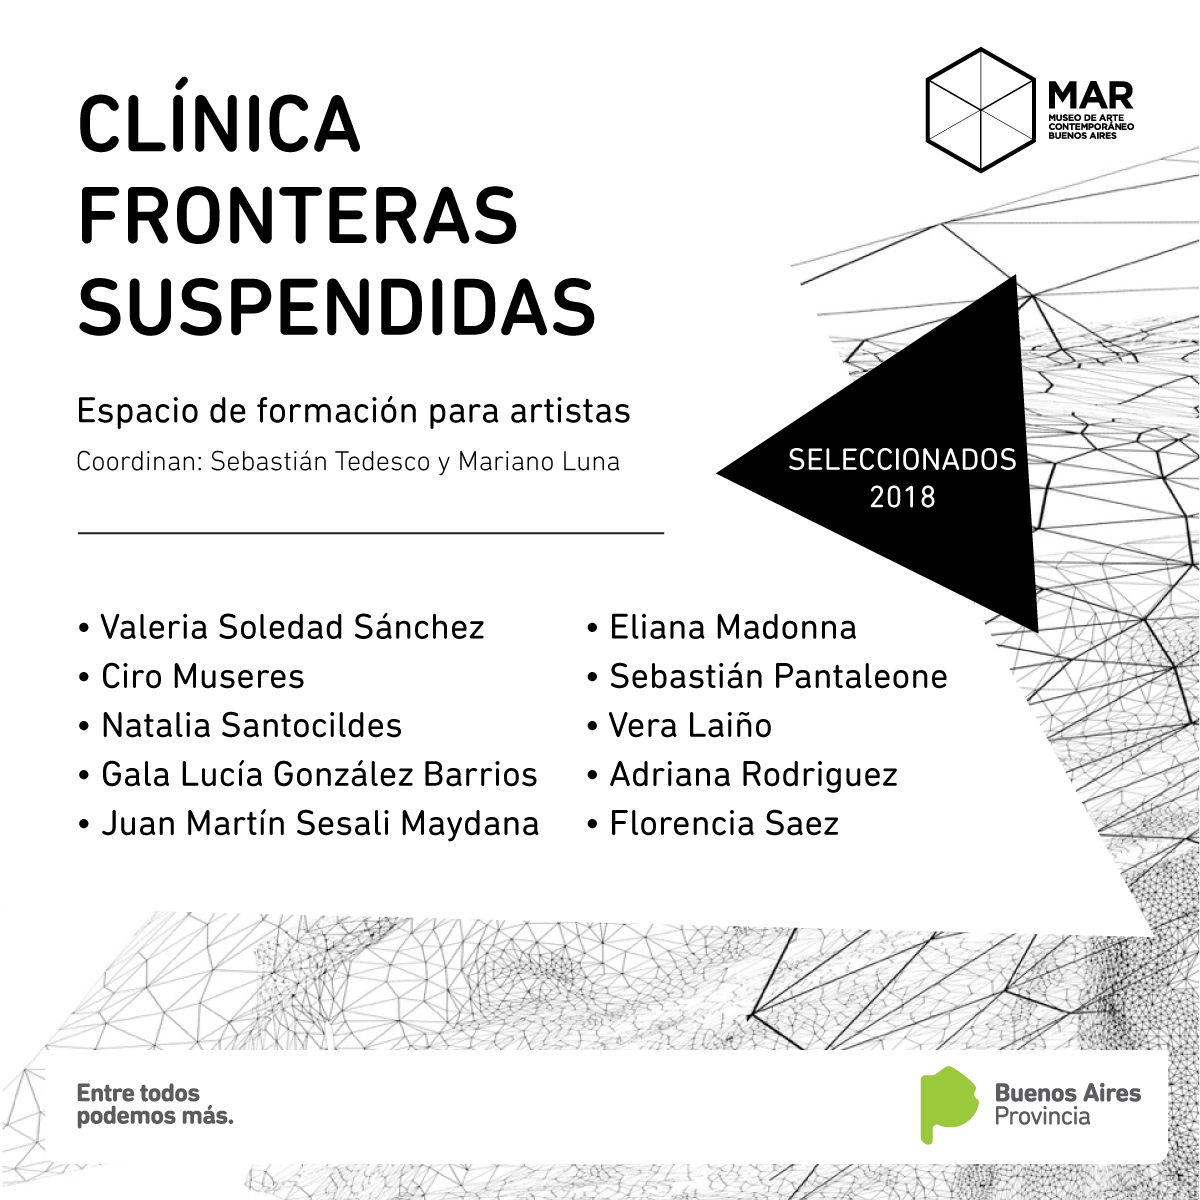 MAR Museo - Ciro Múseres, seleccionado para participar en la Clínica Fronteras Suspendidas 2018.